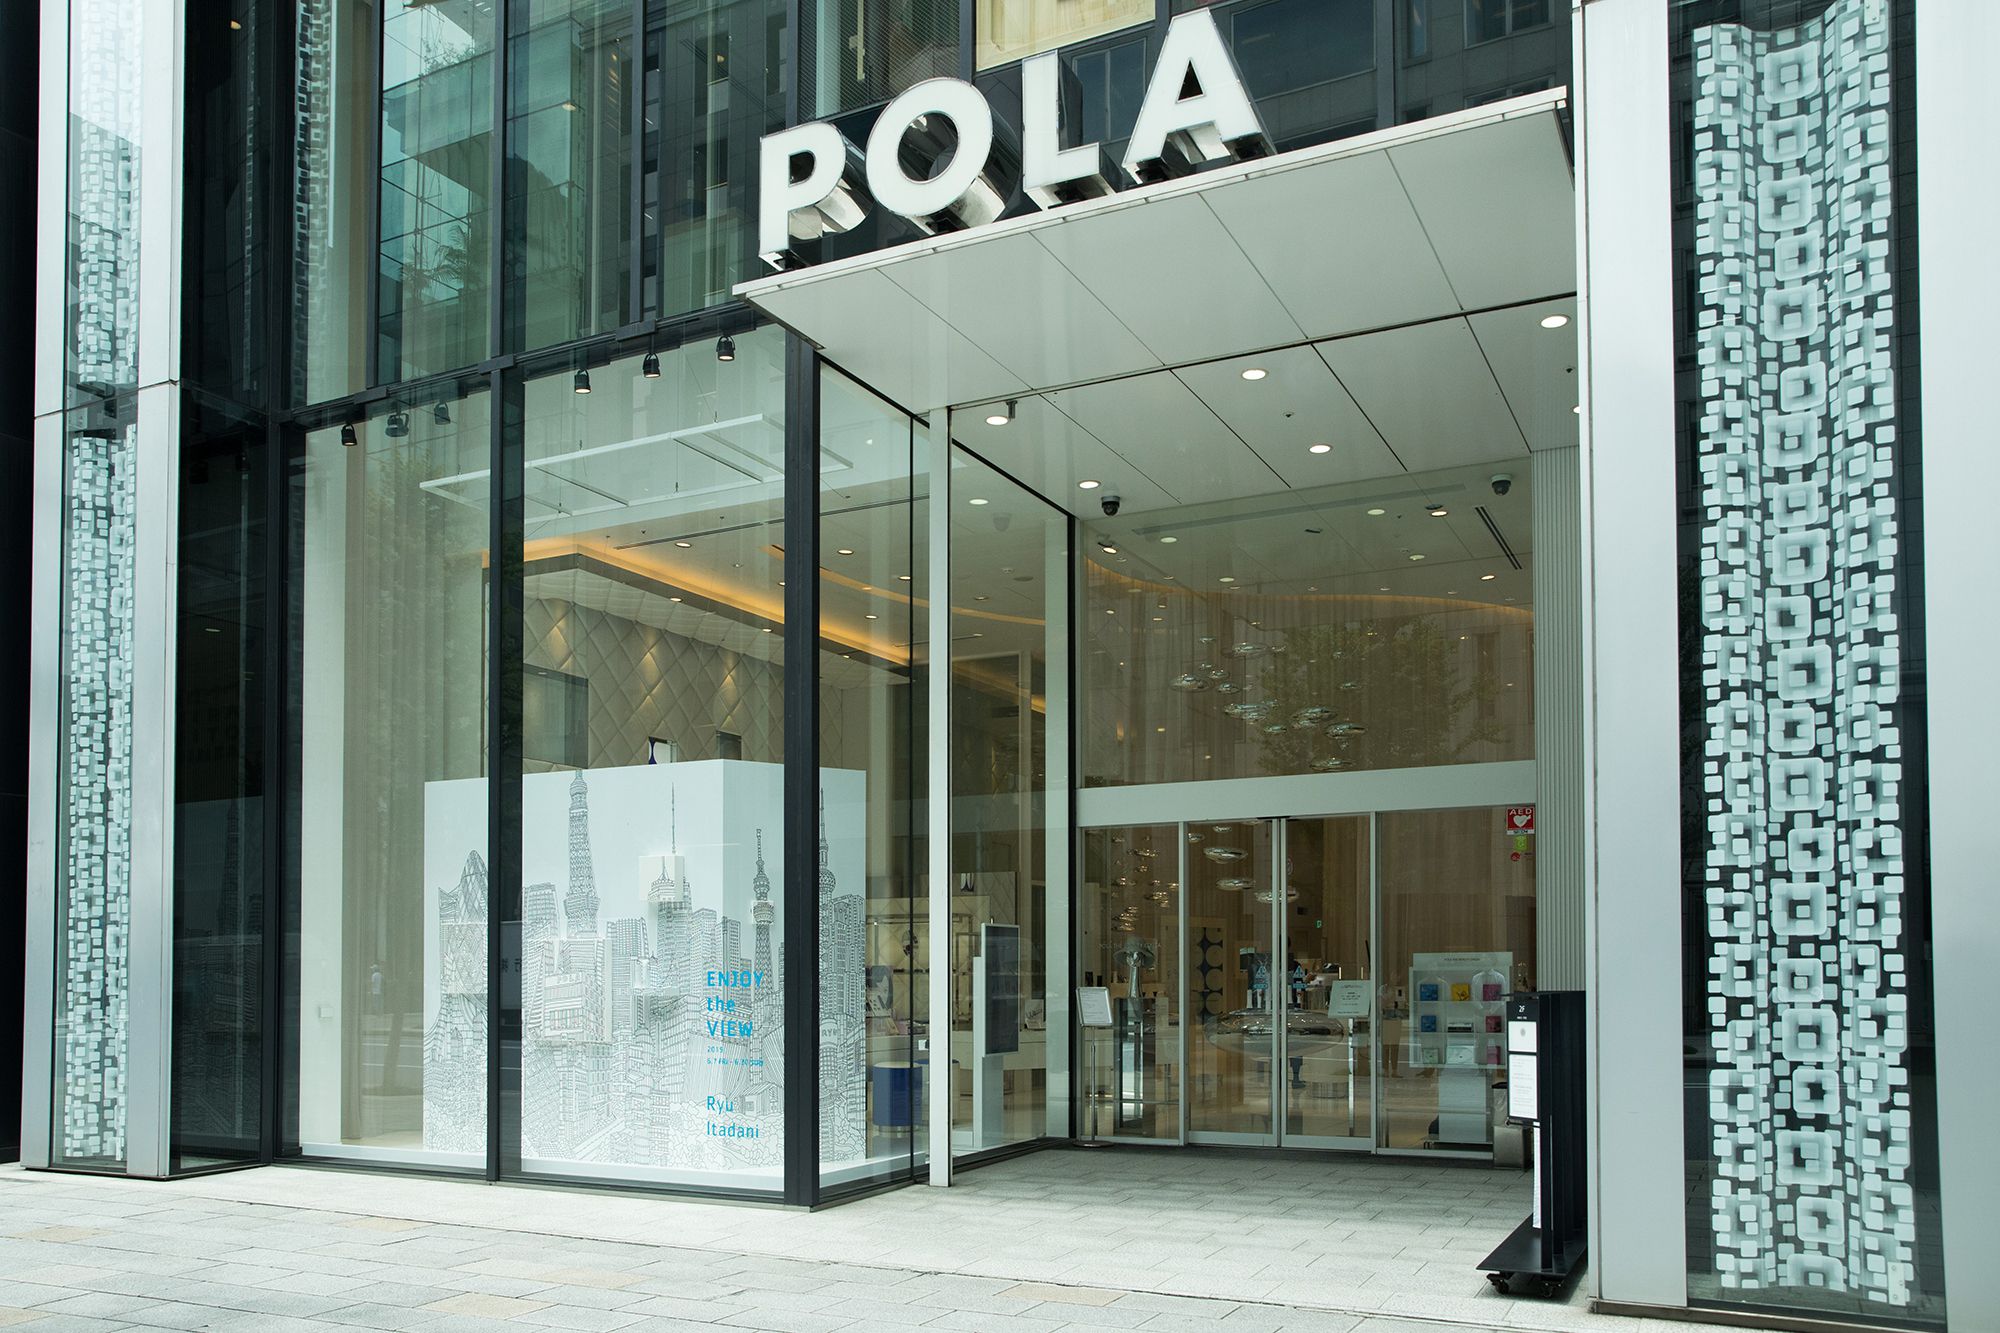 POLA 银座店交通便利，位于中央大道旁，银座一丁目站出站即达